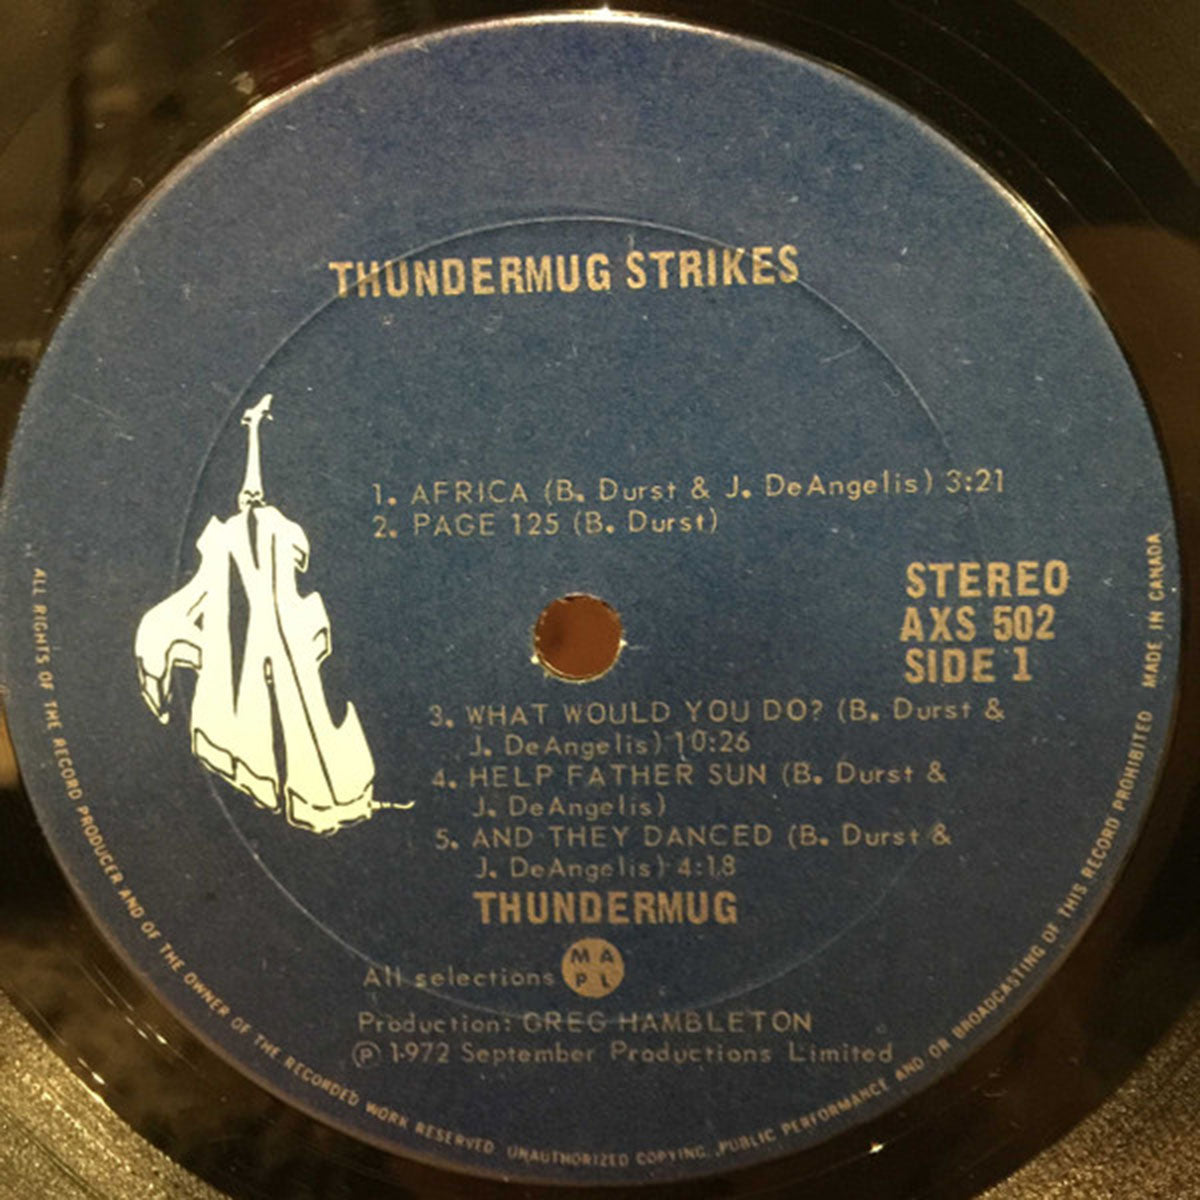 Thundermug – Thundermug Strikes - Rare